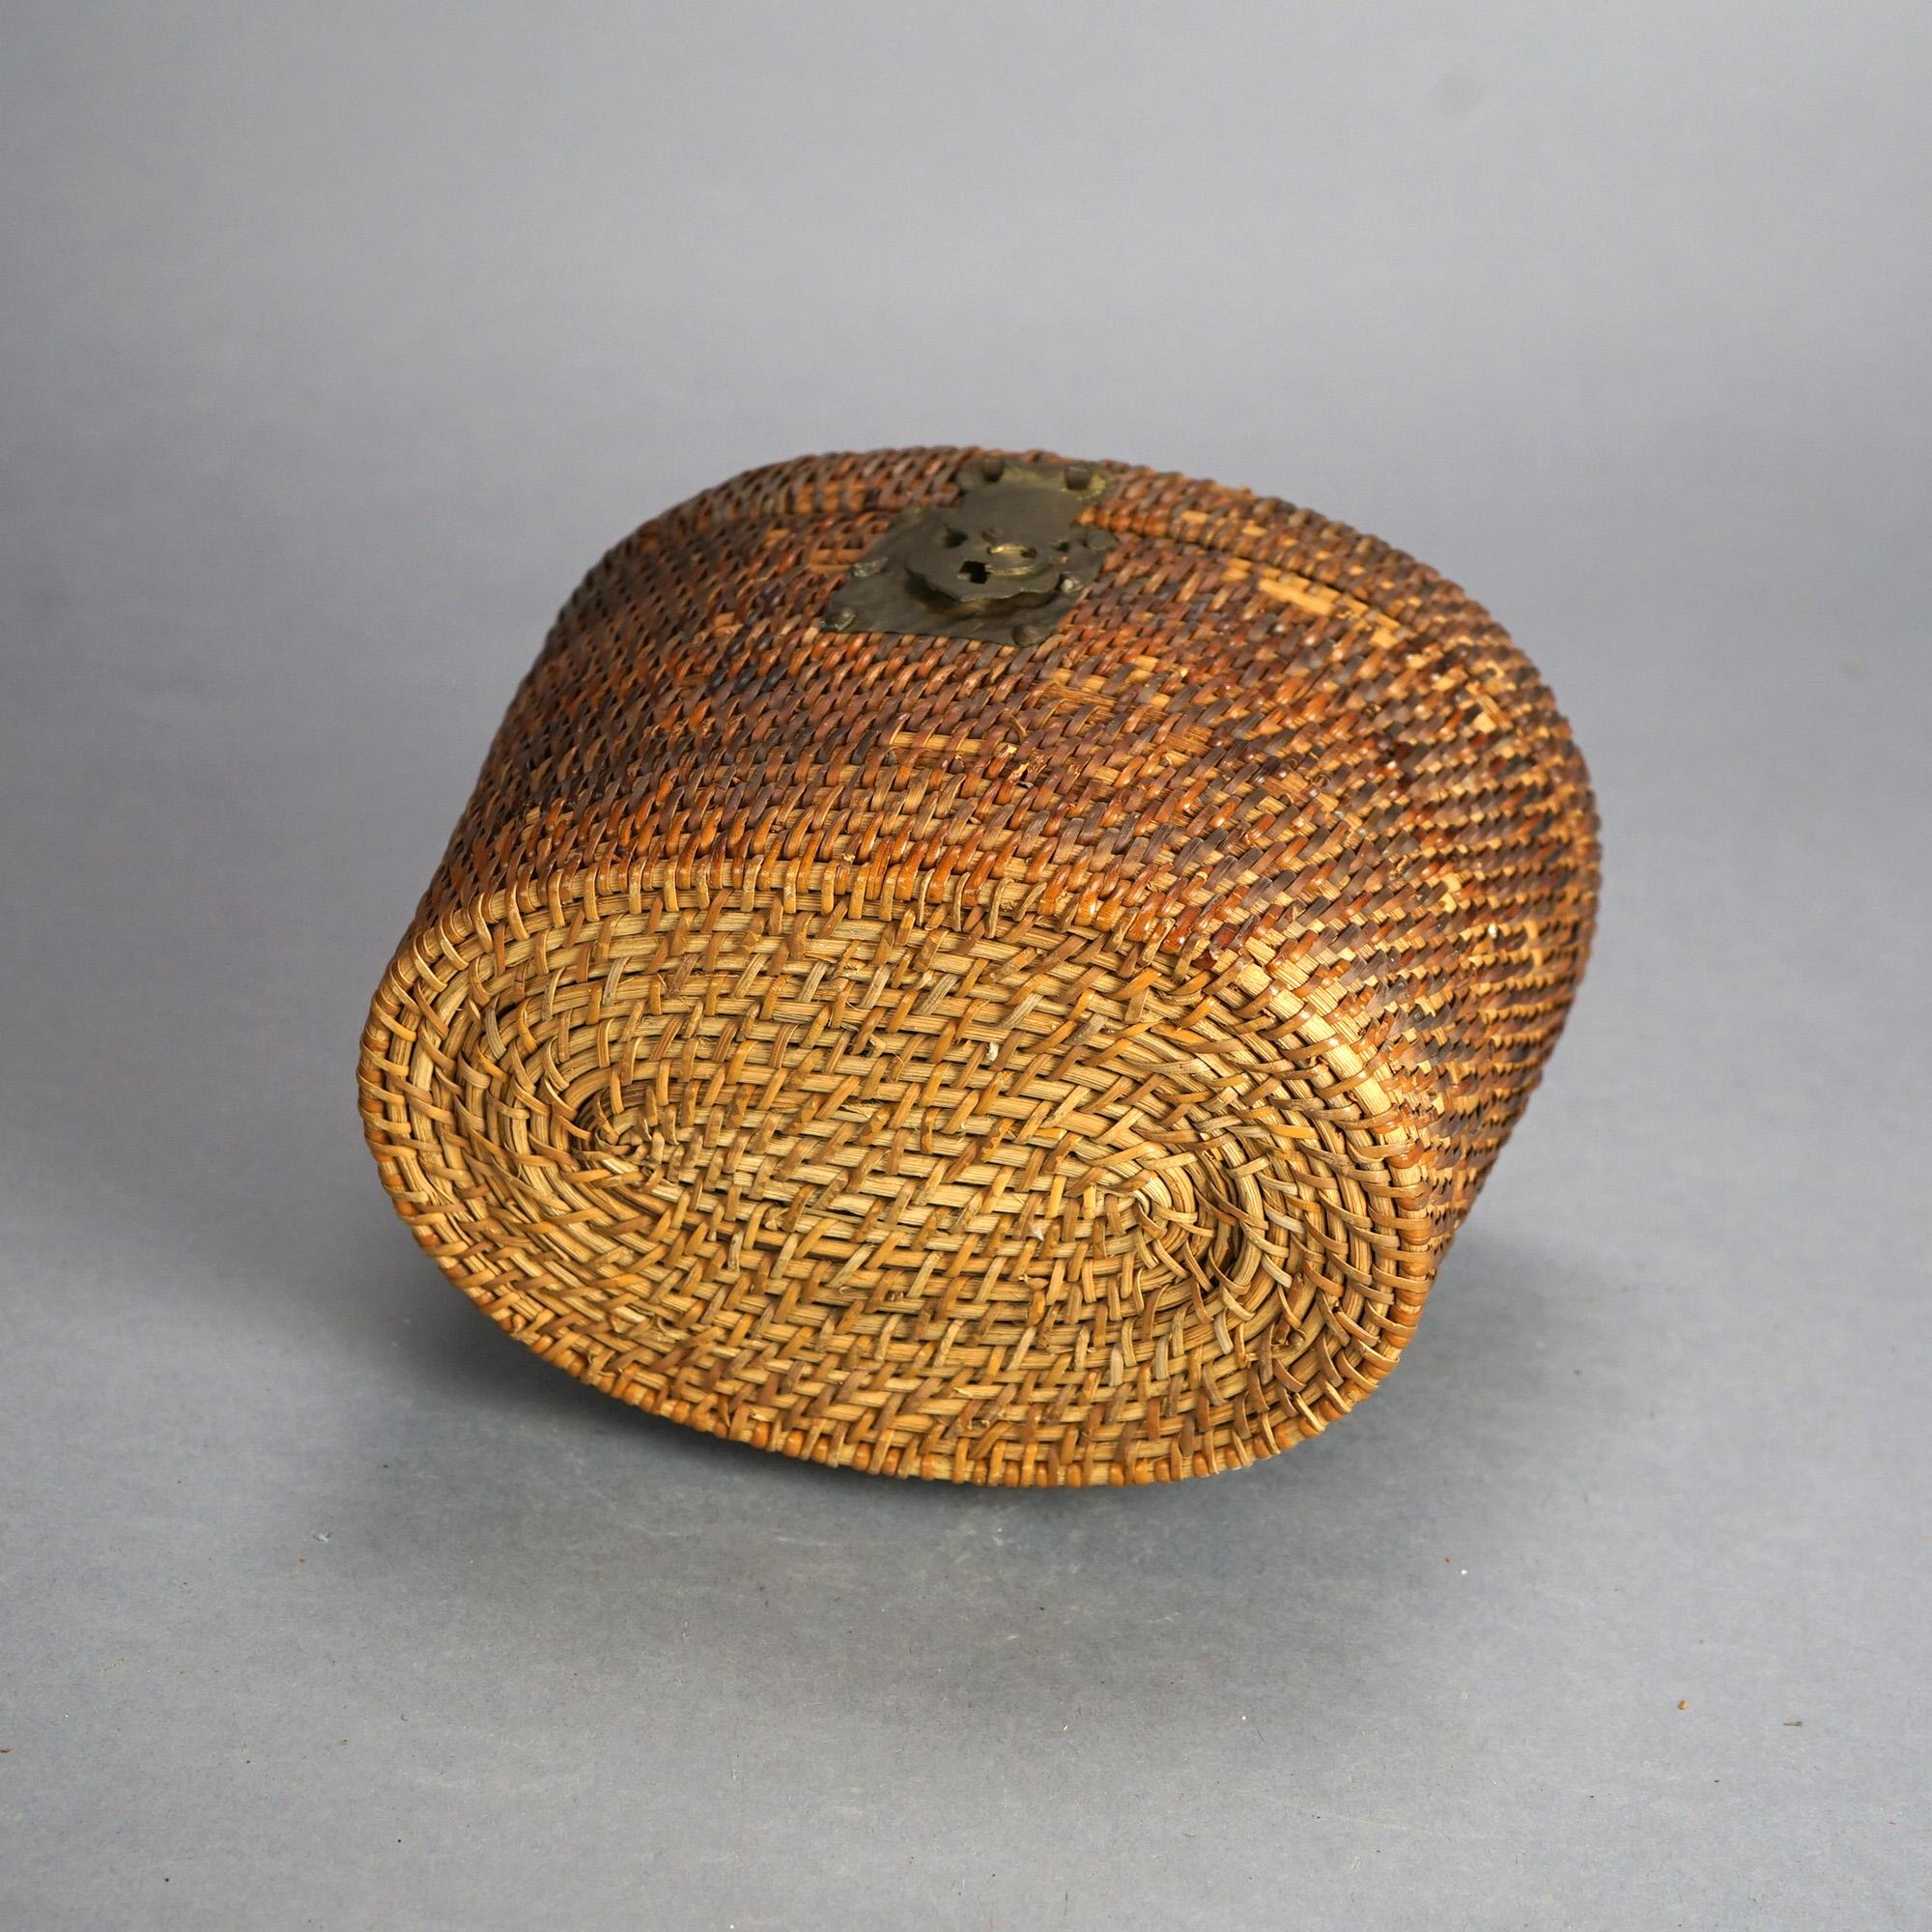 Antique Chinese Porcelain Rose Medallion Teapot Set In Basket Weave Case C1900 8